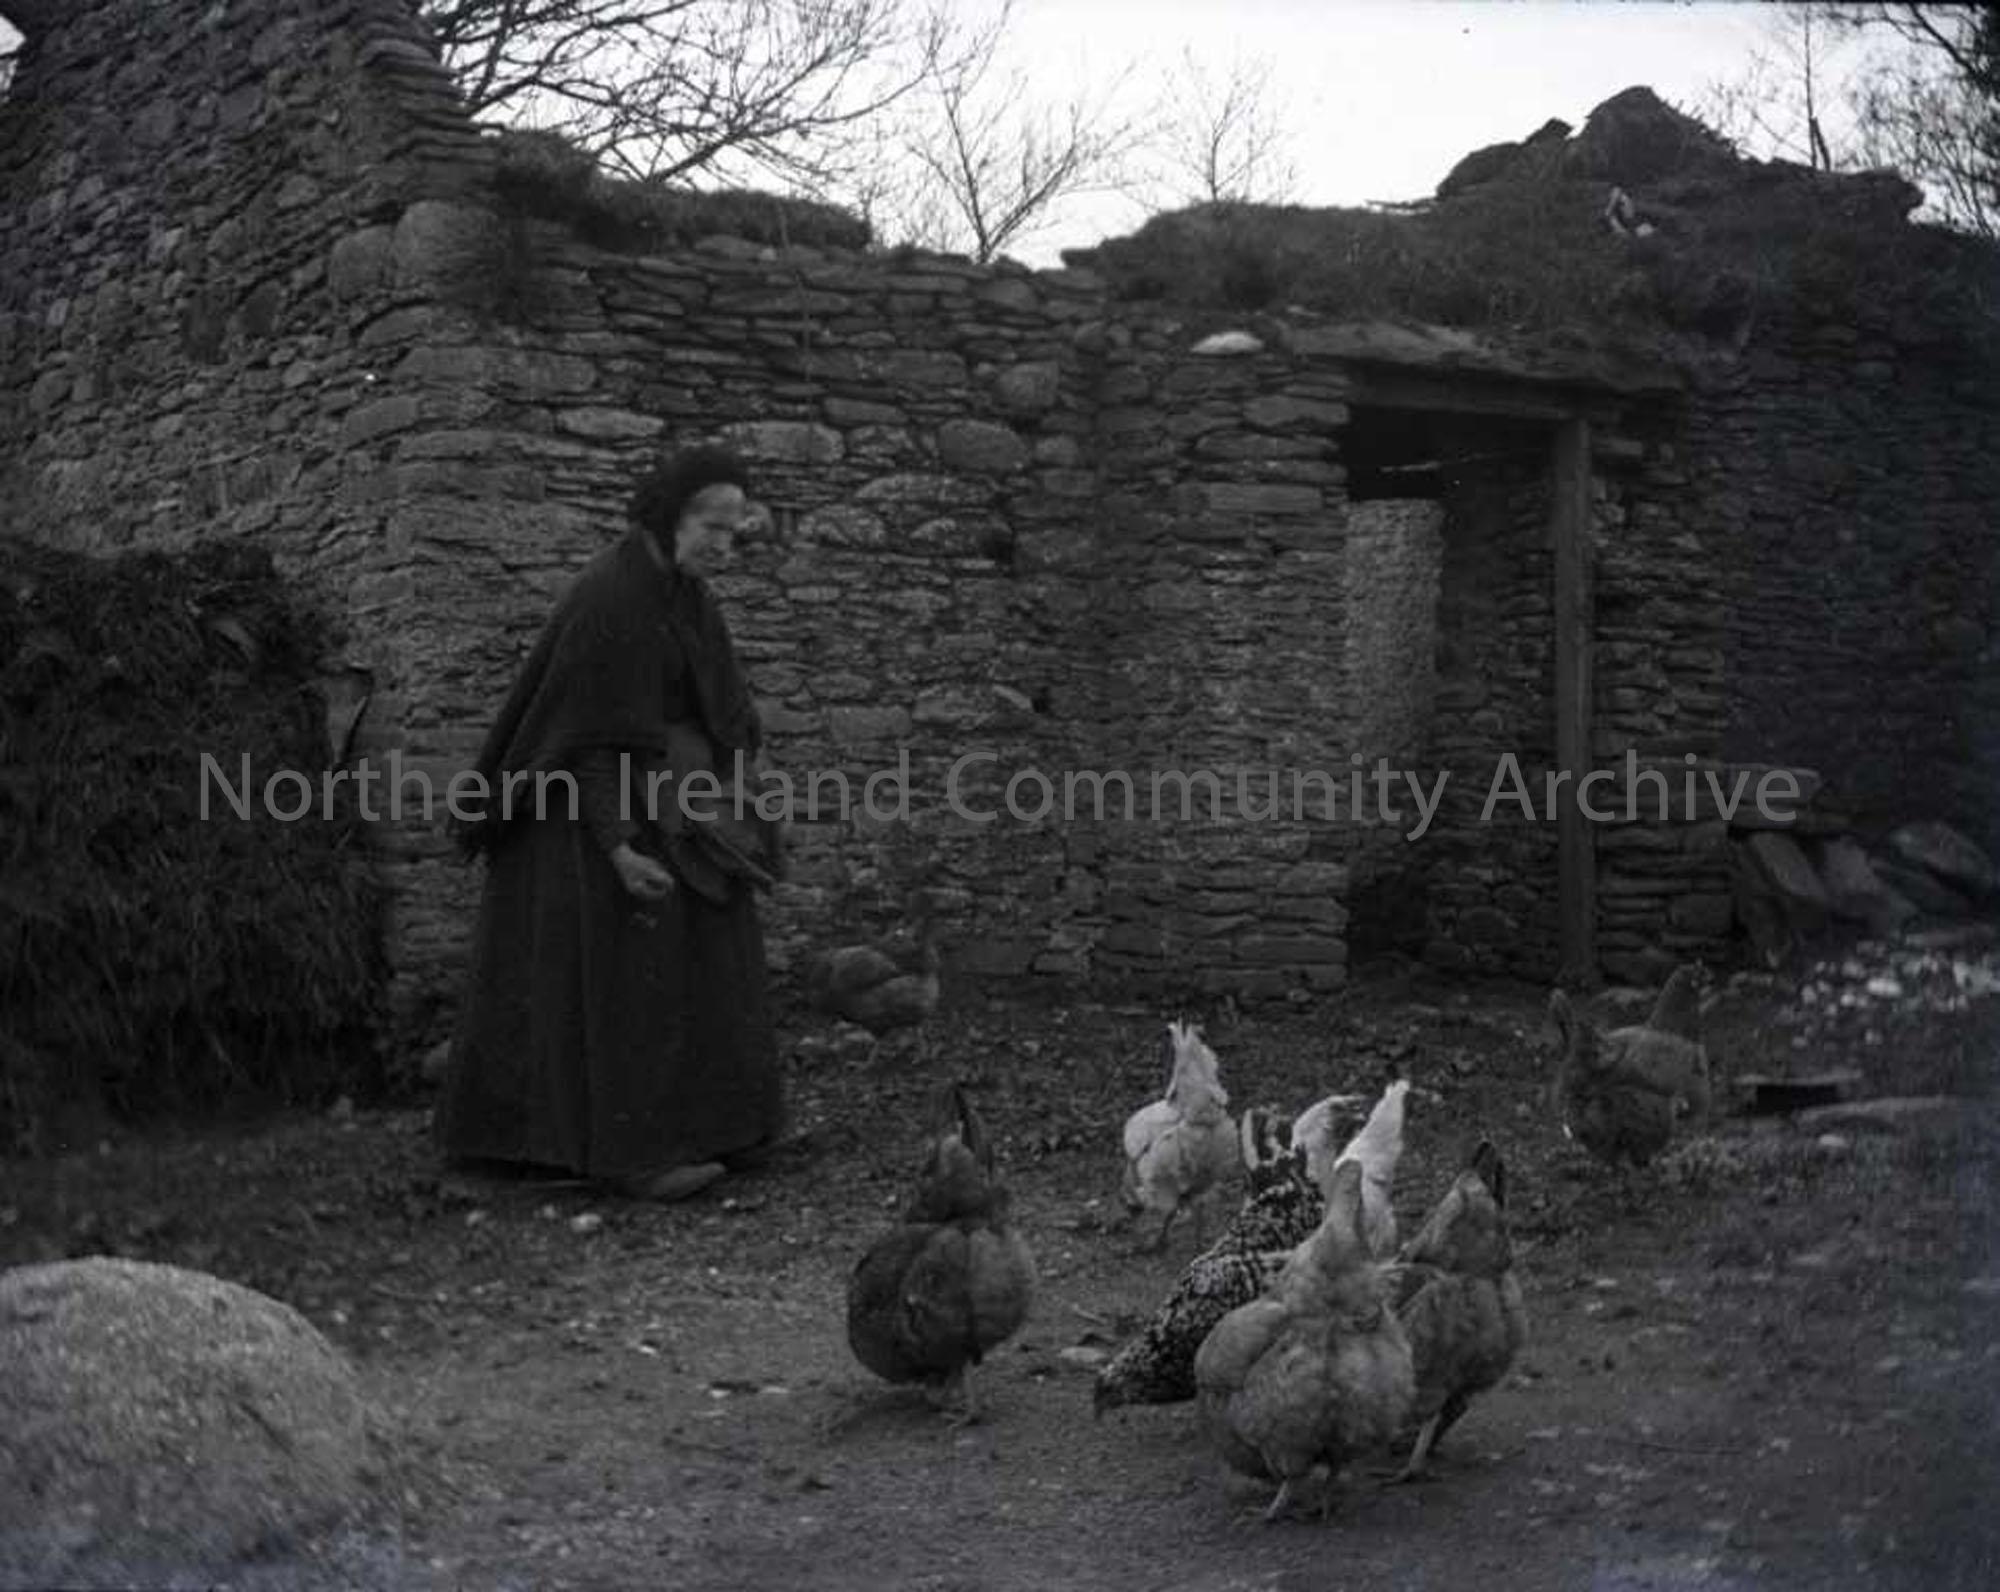 Lady feeding chickens